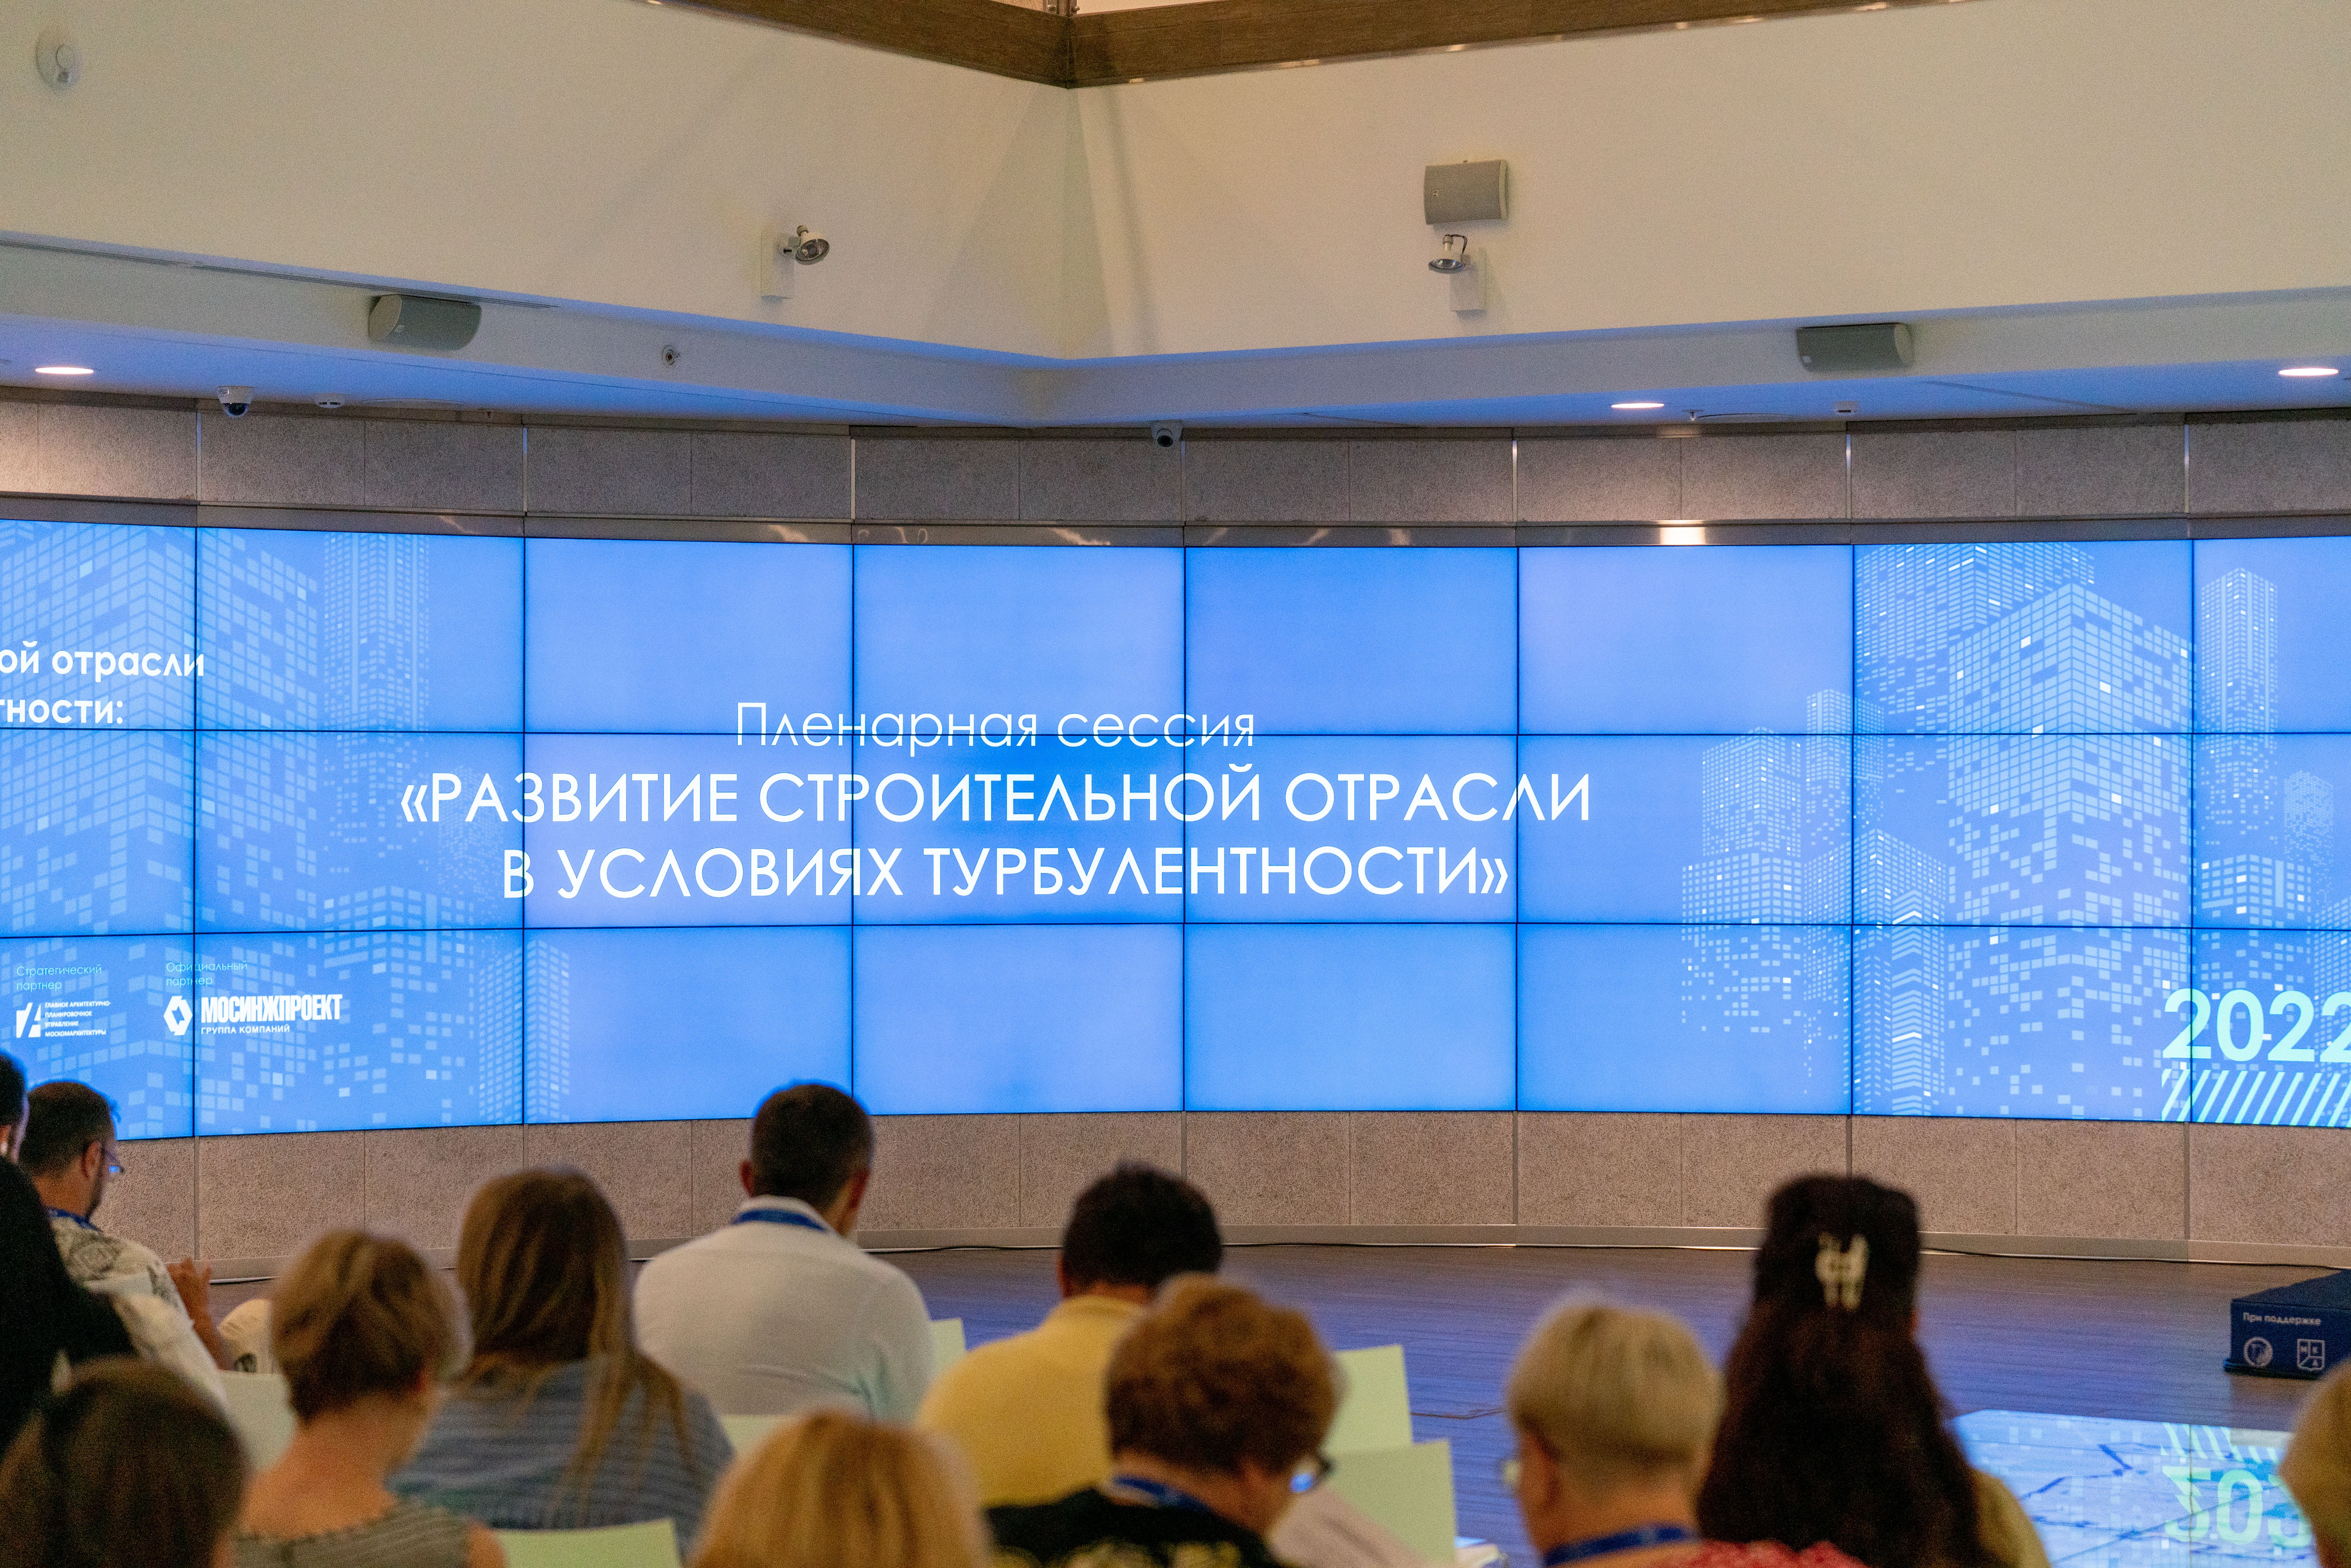 Перспективы развития строительной отрасли обсудят в Москве в рамках двухдневной конференции